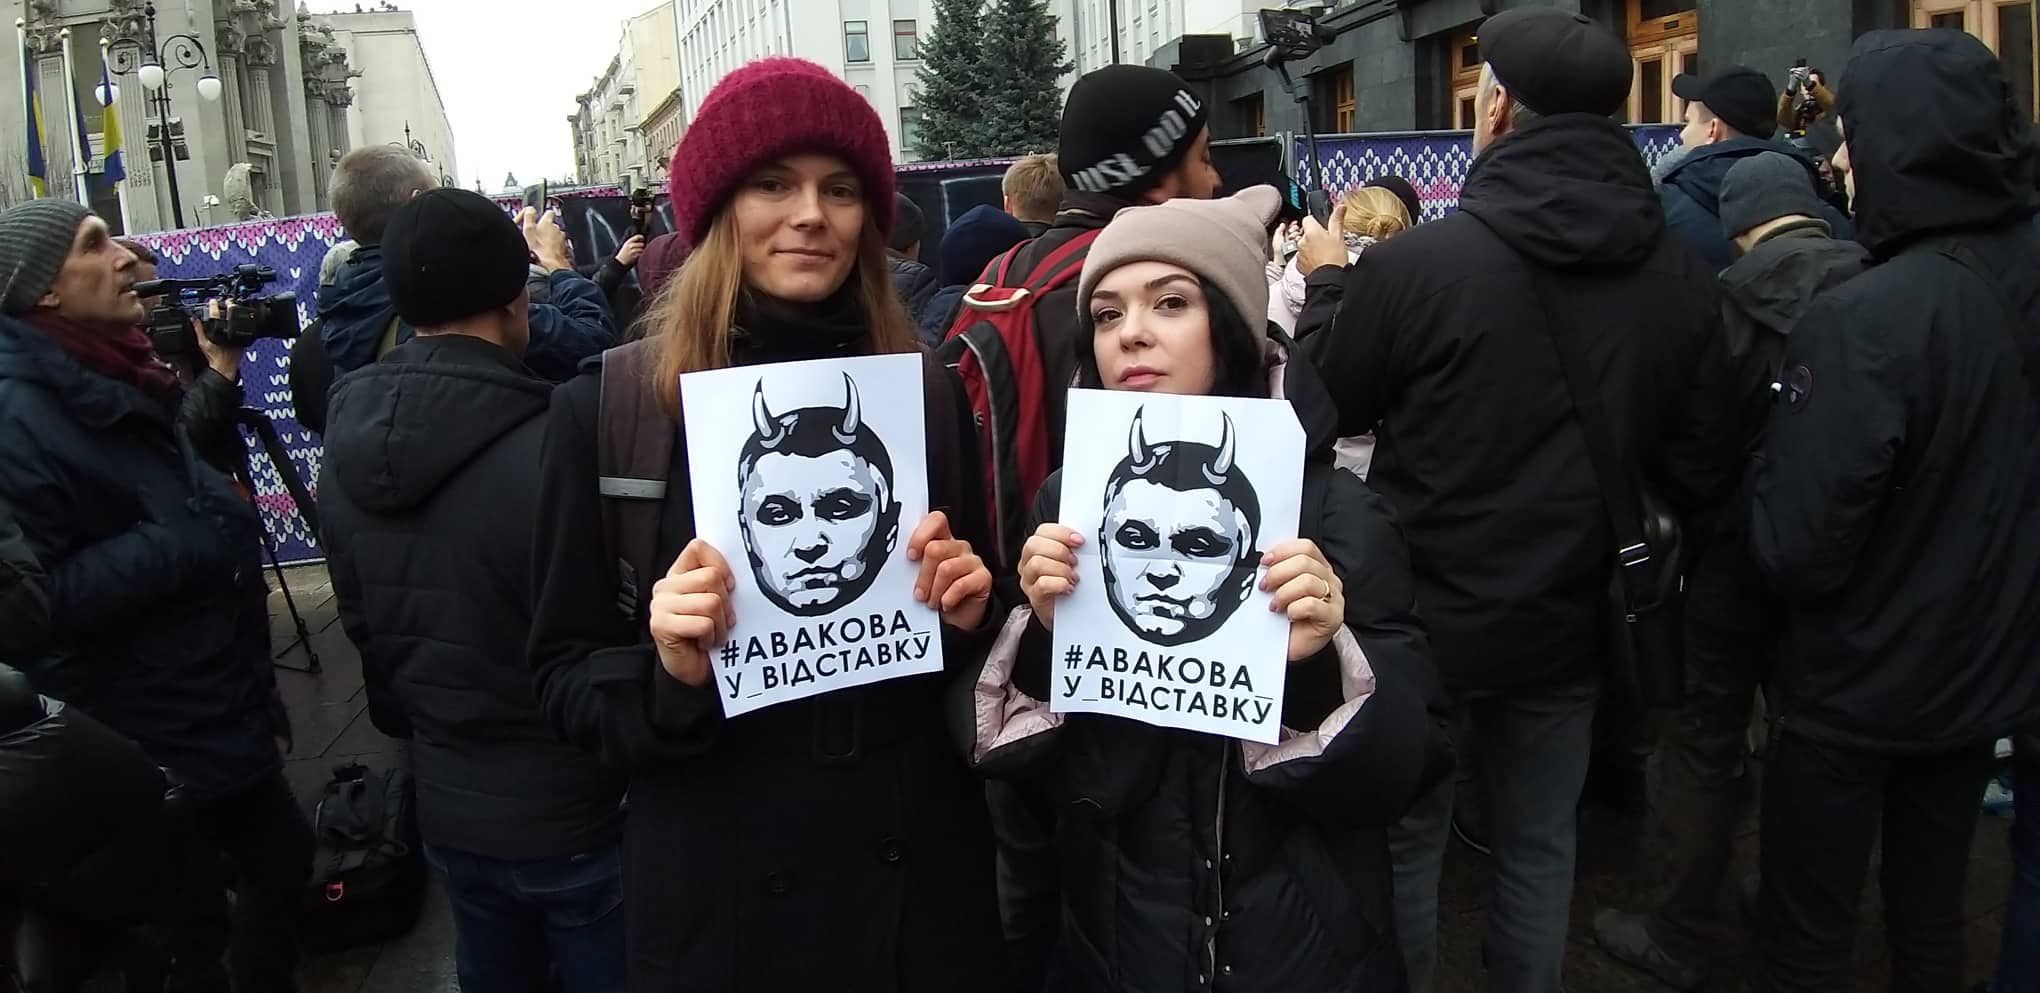 Аваков заєднав: у Києві протестують проти фальсифікацій у справі Шеремета